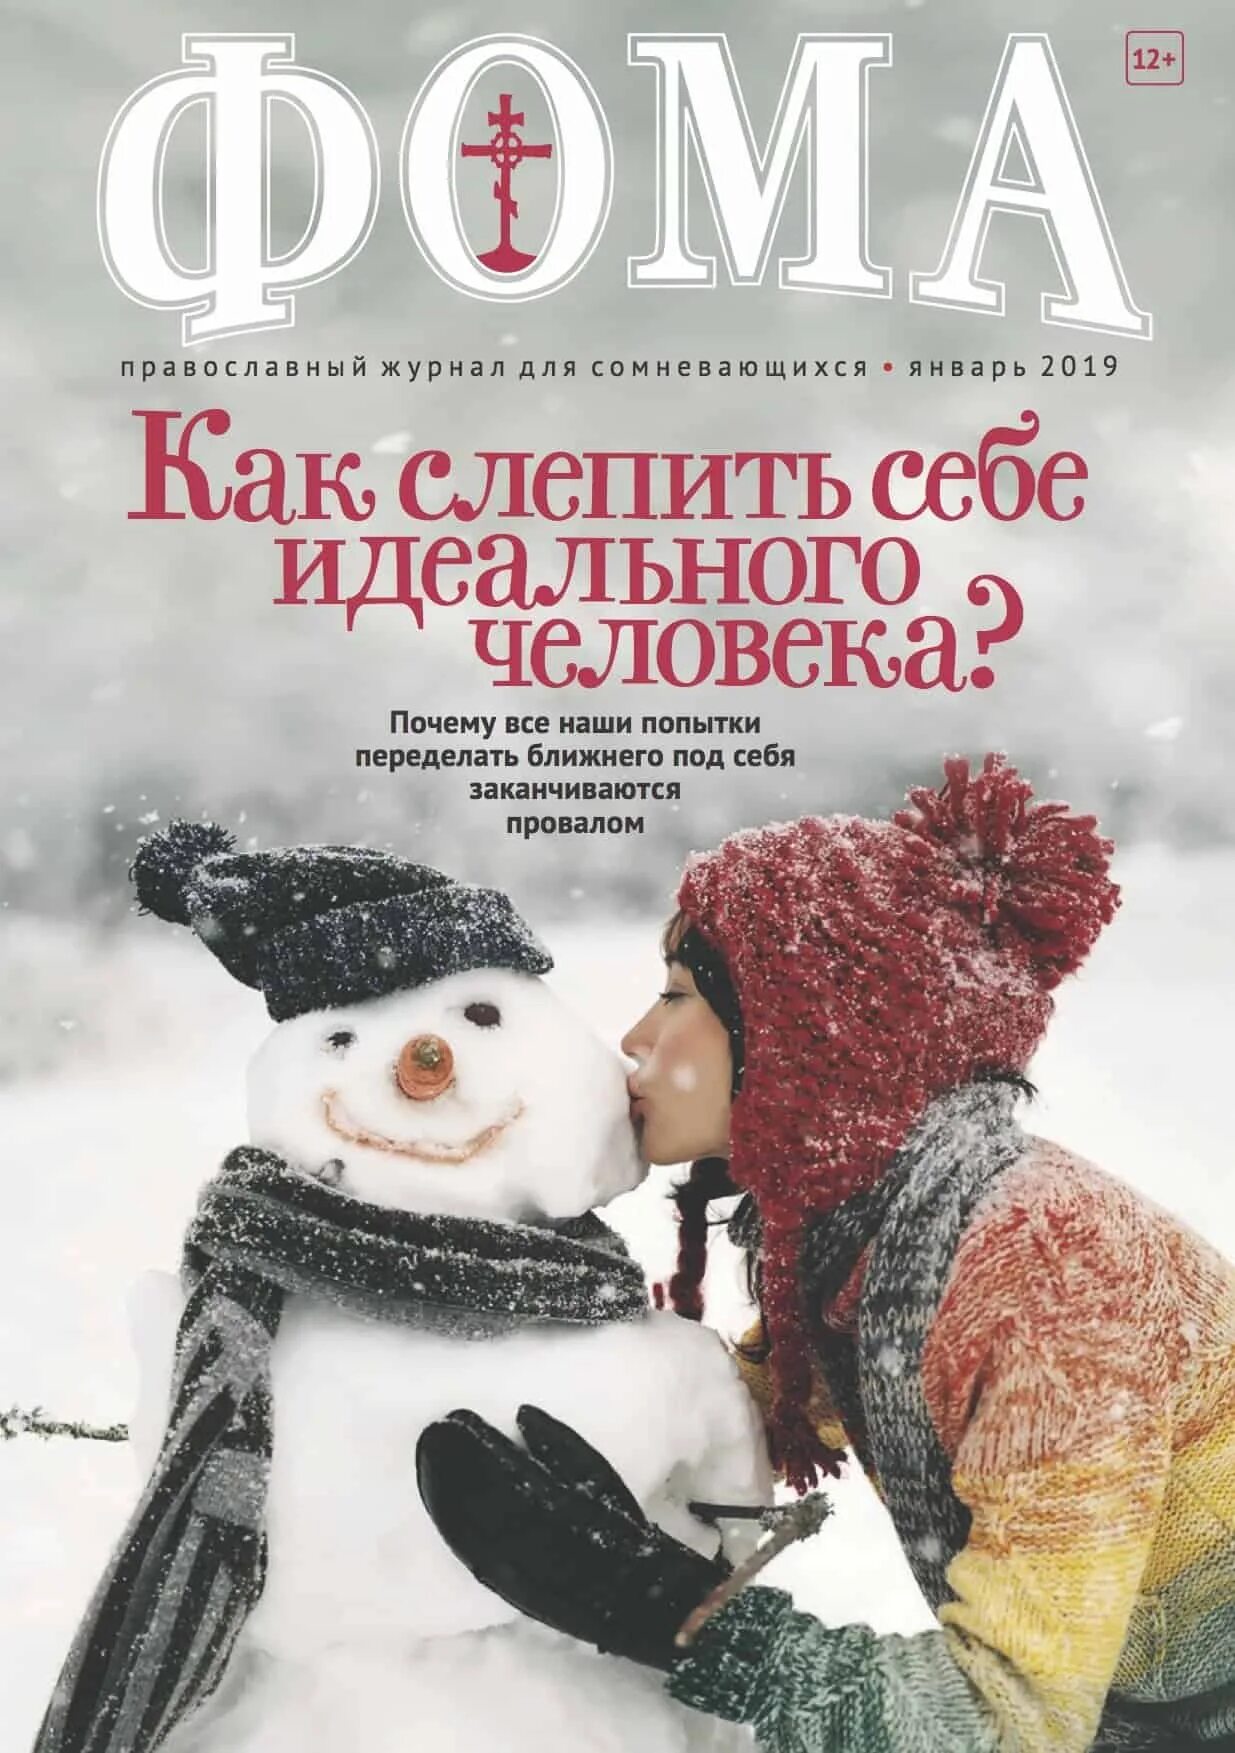 Православный журнал. Сайты православных журналов